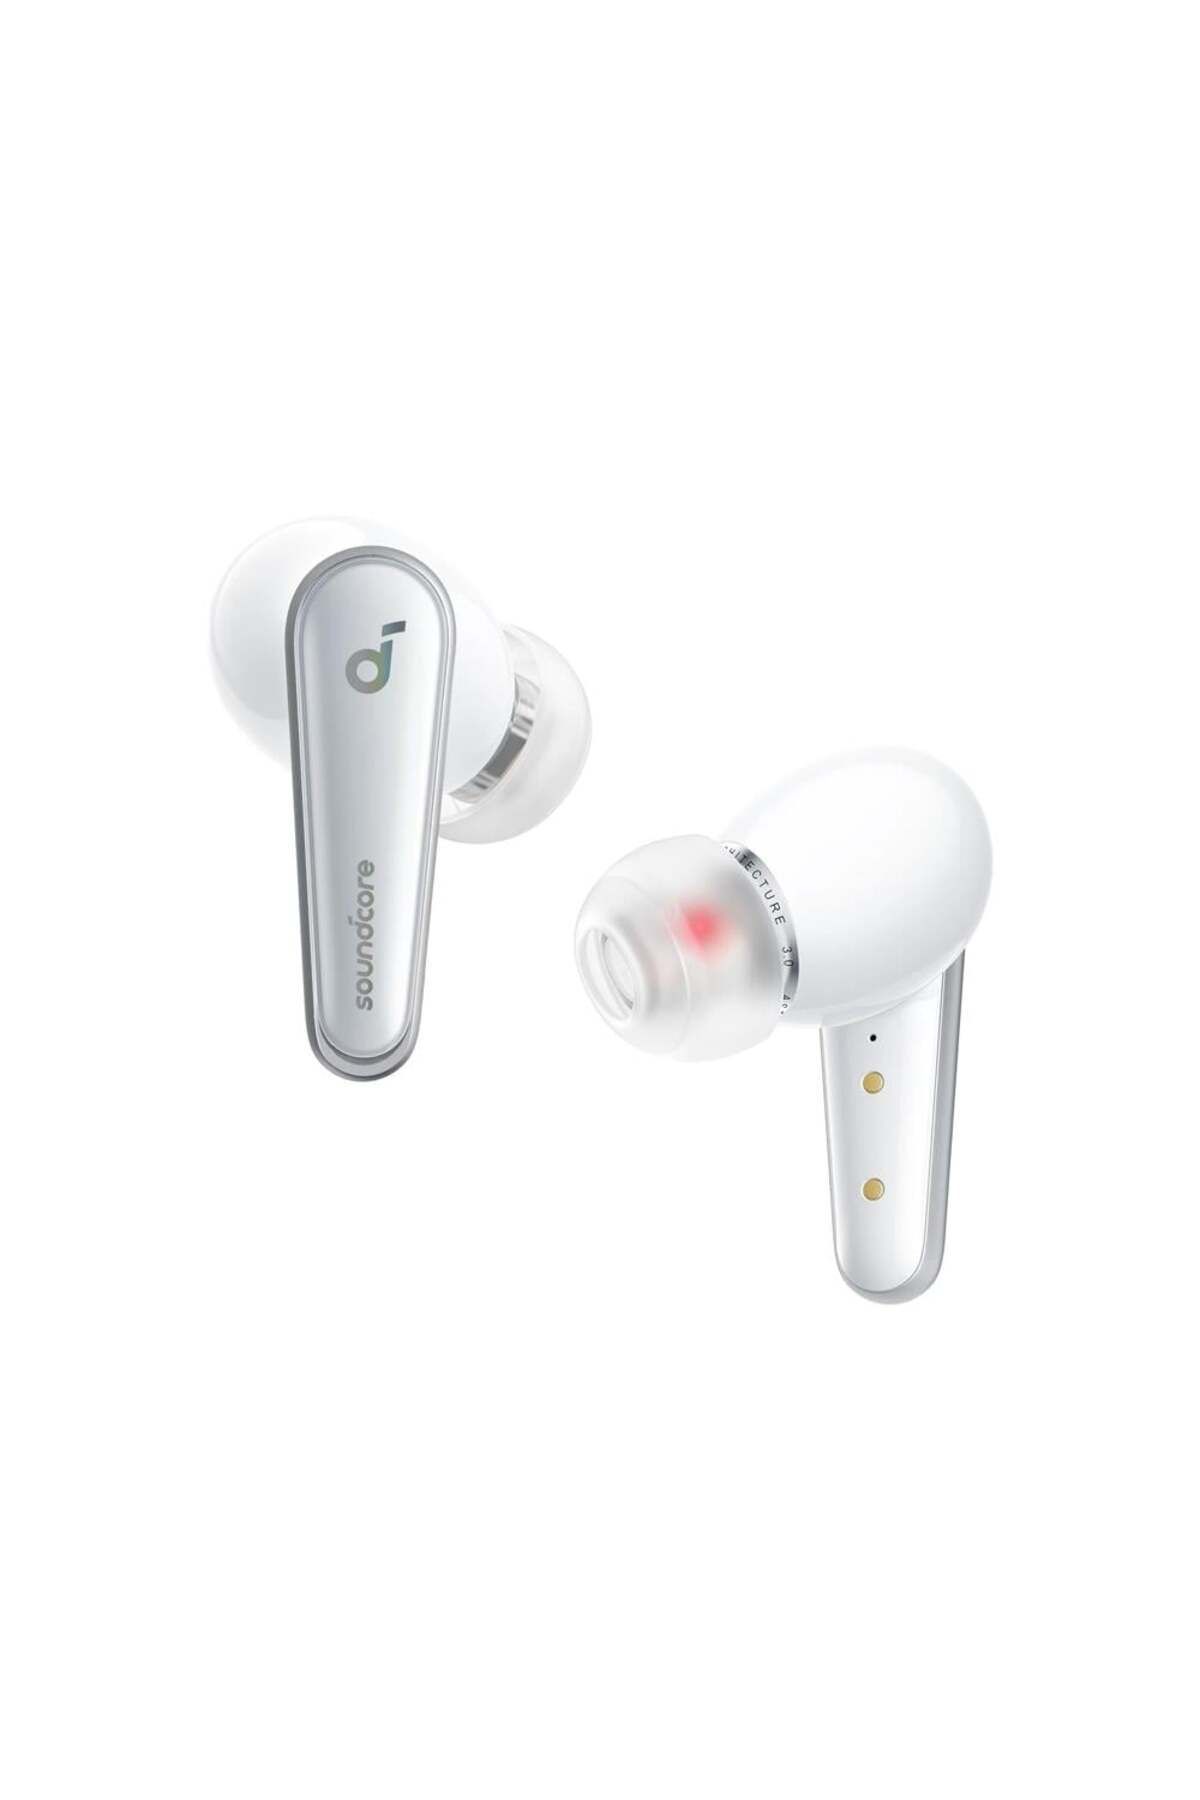 Anker Soundcore Liberty 4 Kablosuz Bluetooth Kulaklık - Beyaz